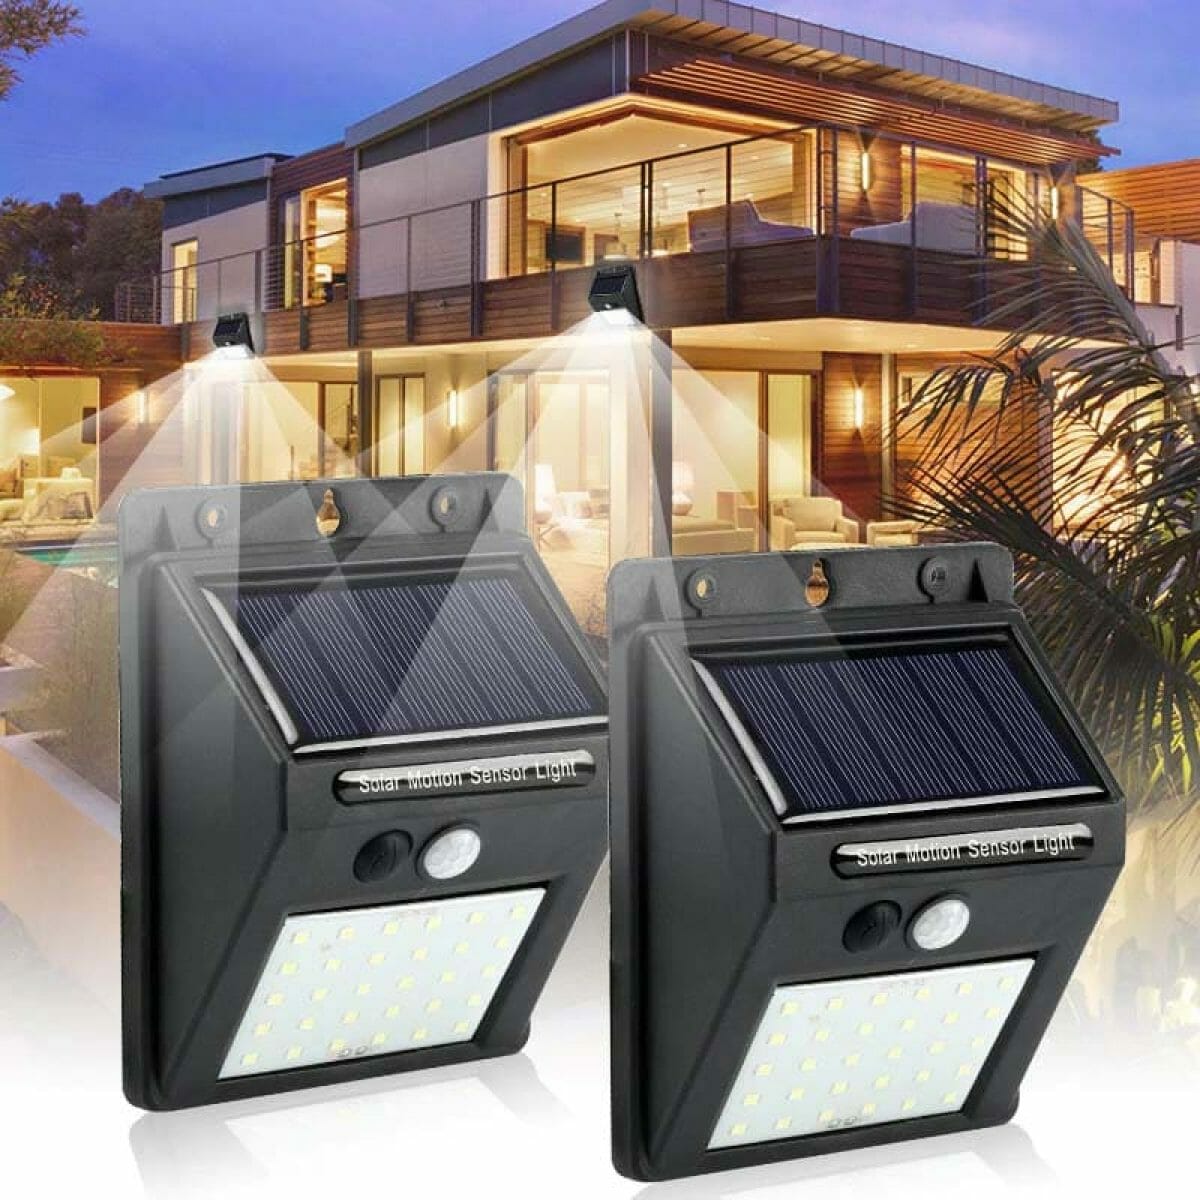 Luz de Segurança com Sensor de Movimento e Painel Solar - Sem Necessidade de Cabos e Fácil Instalação 4 Peças